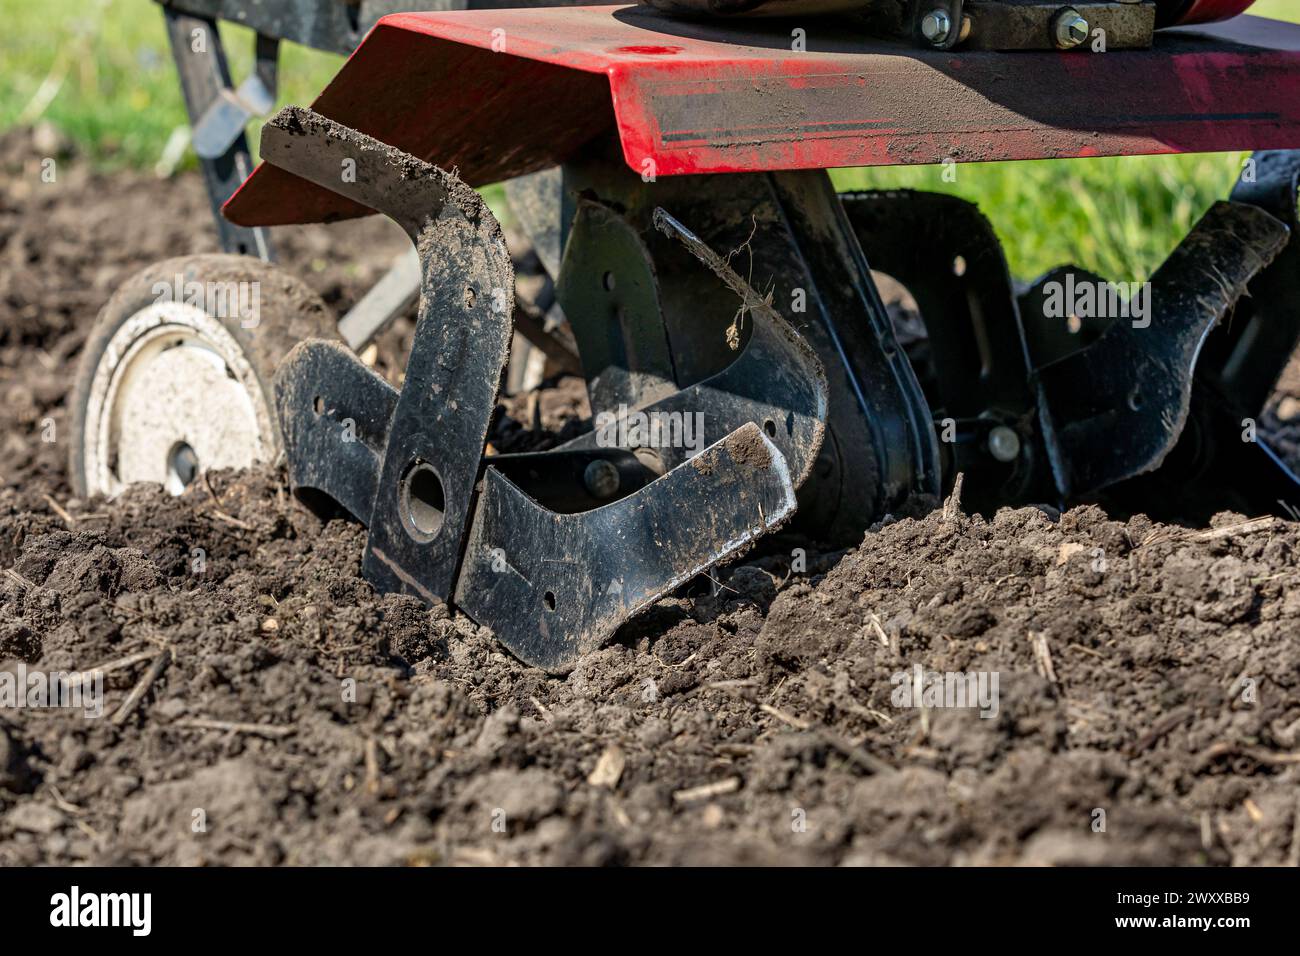 Garden tiller tilling soil in spring. Gardening, soil health and fertility concept. Stock Photo